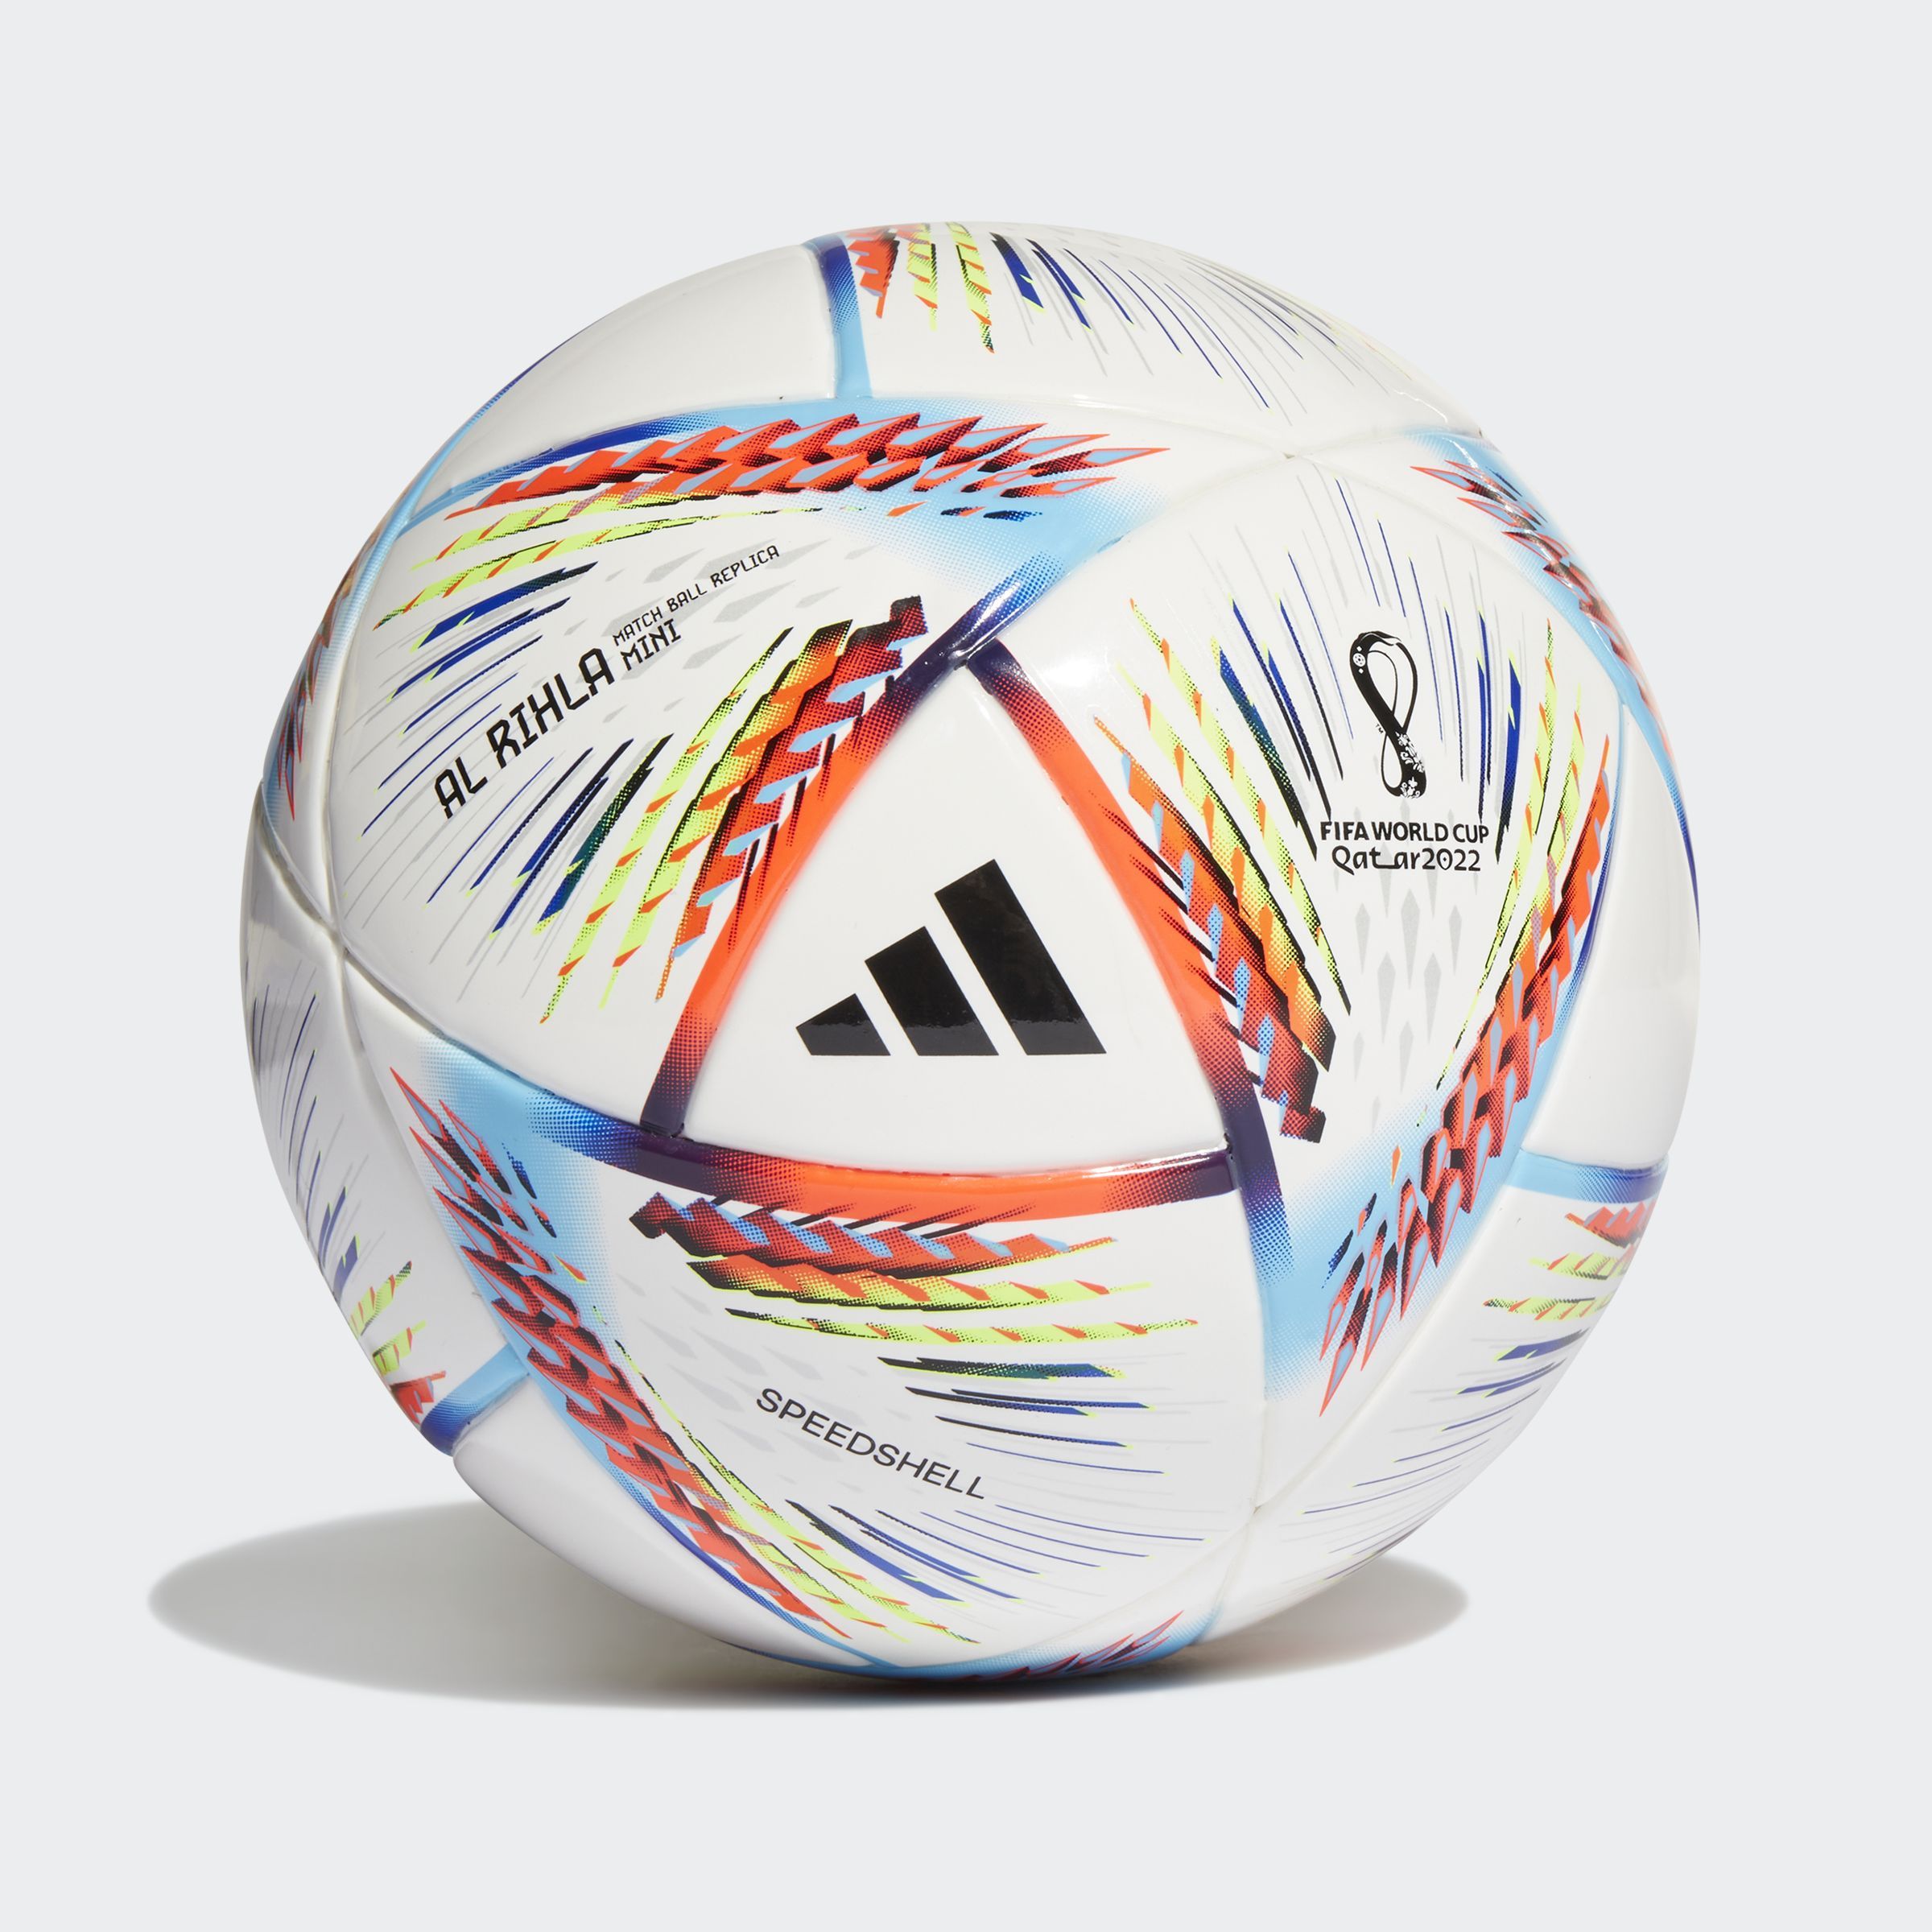 Wc22 Mini Balón de para marca Adidas Referencia : - prochampions